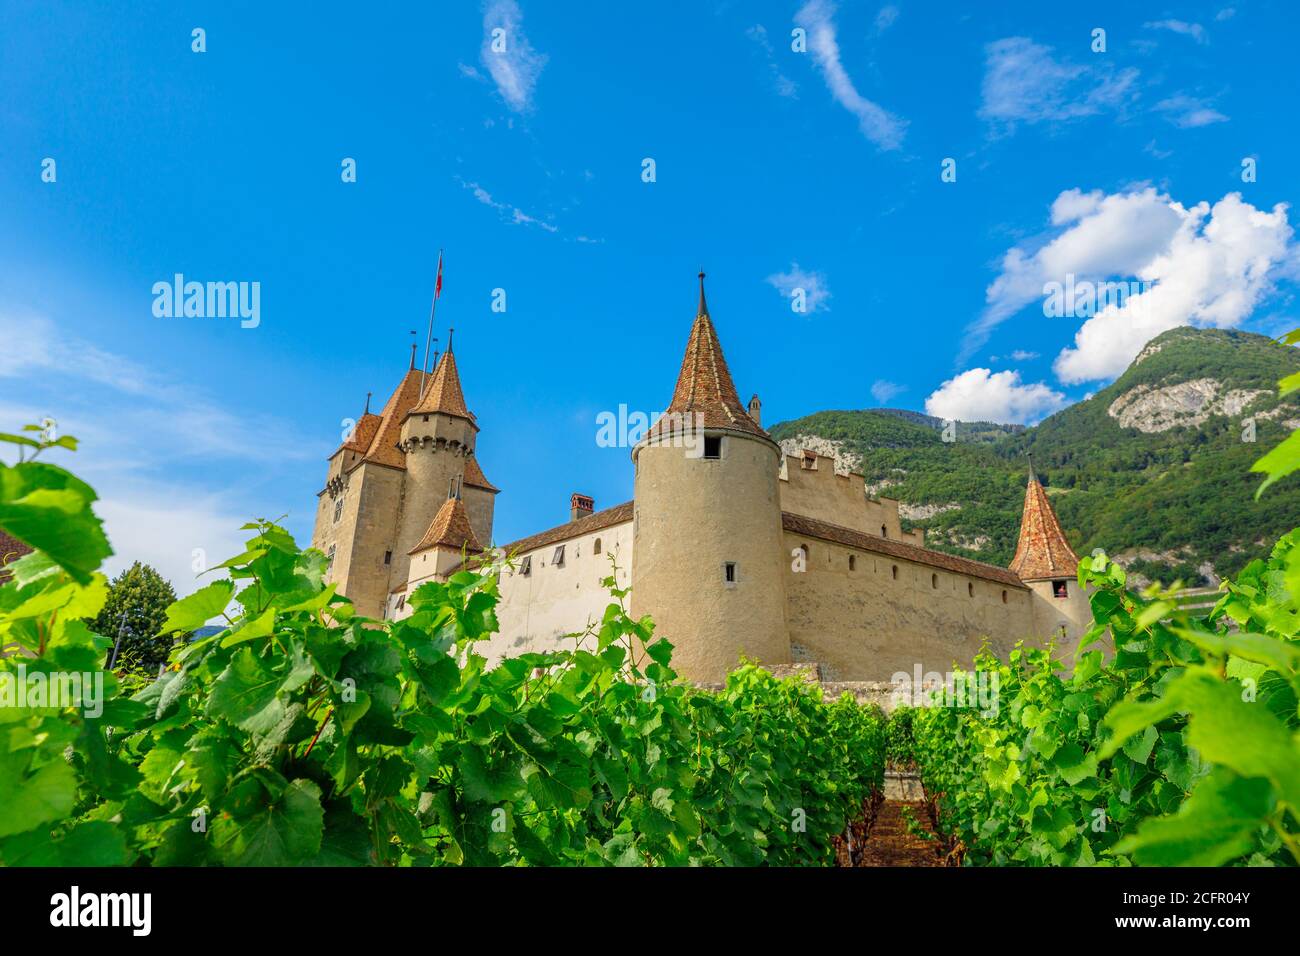 Des feuilles de raisin en premier plan et des rangées de vignes entourent le château d'Aigle, dans le canton de Vaud, en Suisse. Château d'Aigle surplombant les vignobles en terrasse, Suisse Banque D'Images